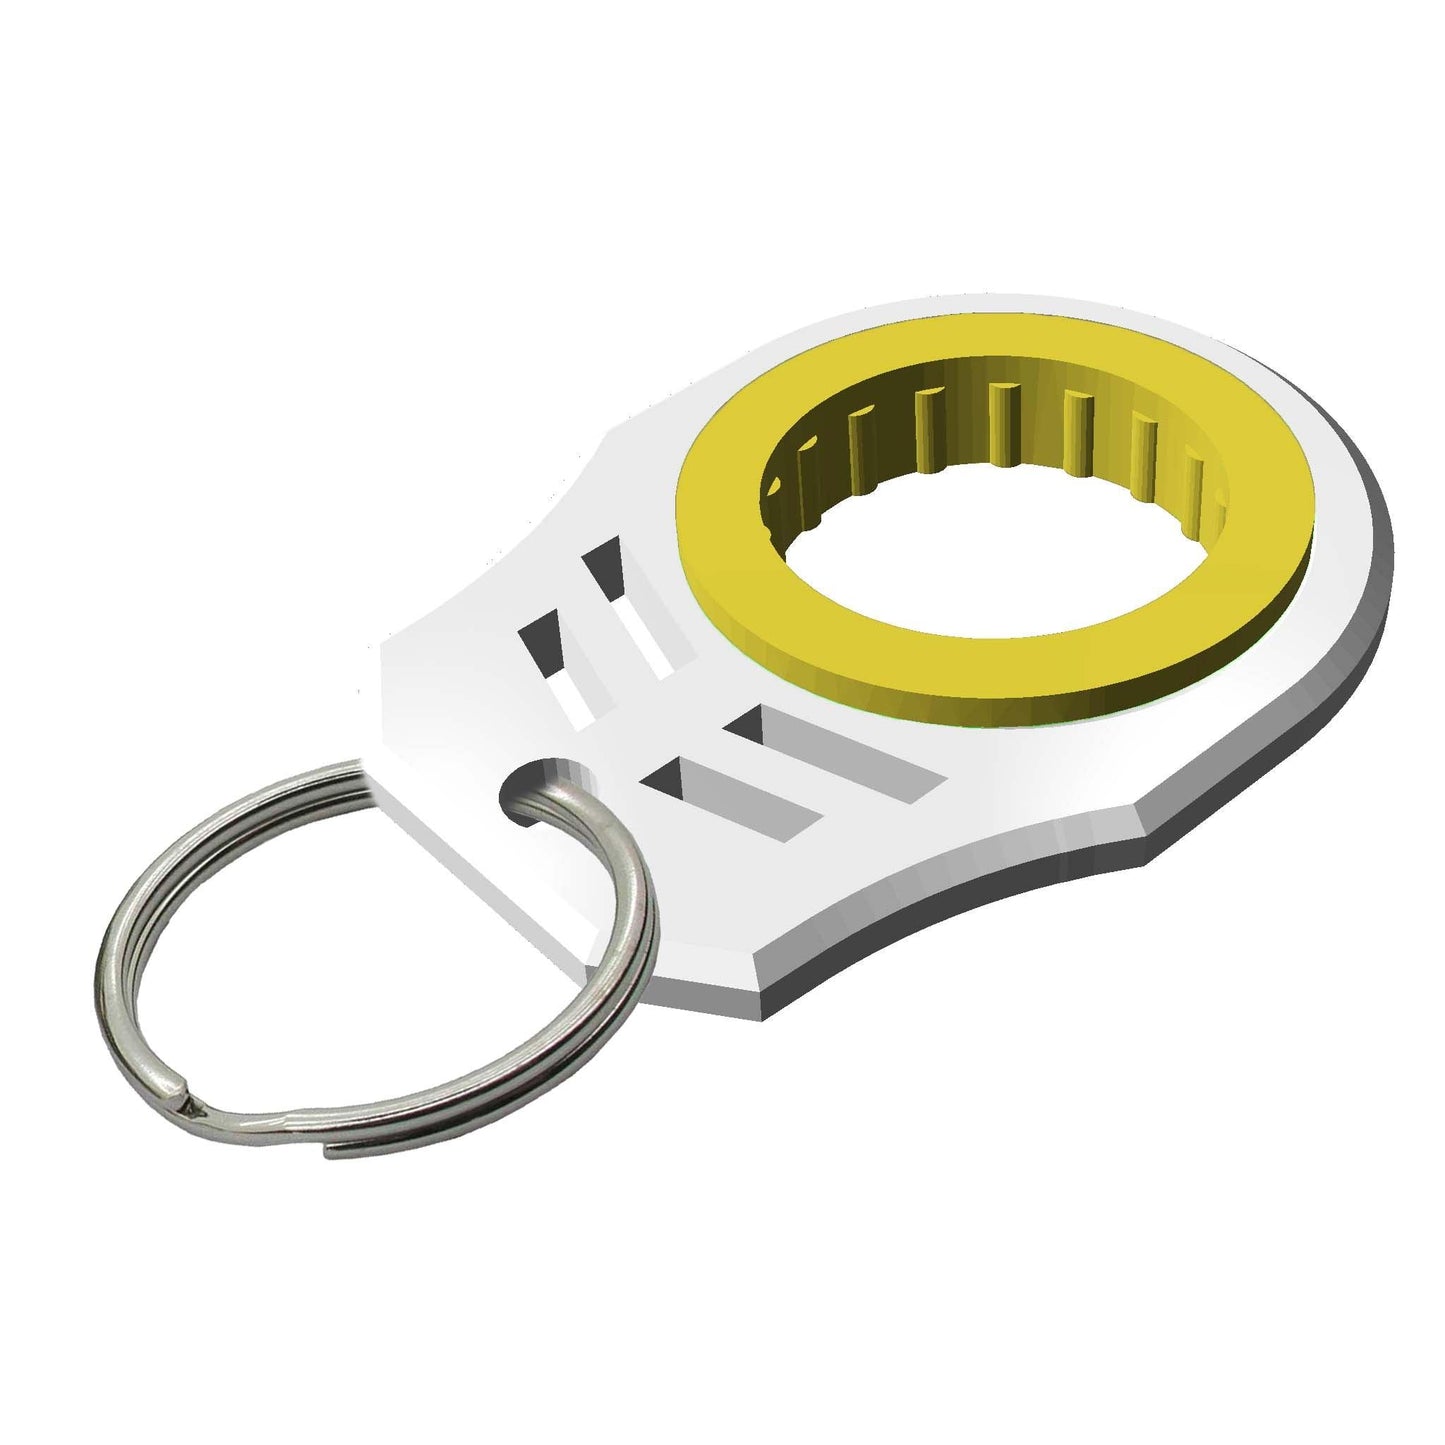 Innovative Spinner Key Chain Design